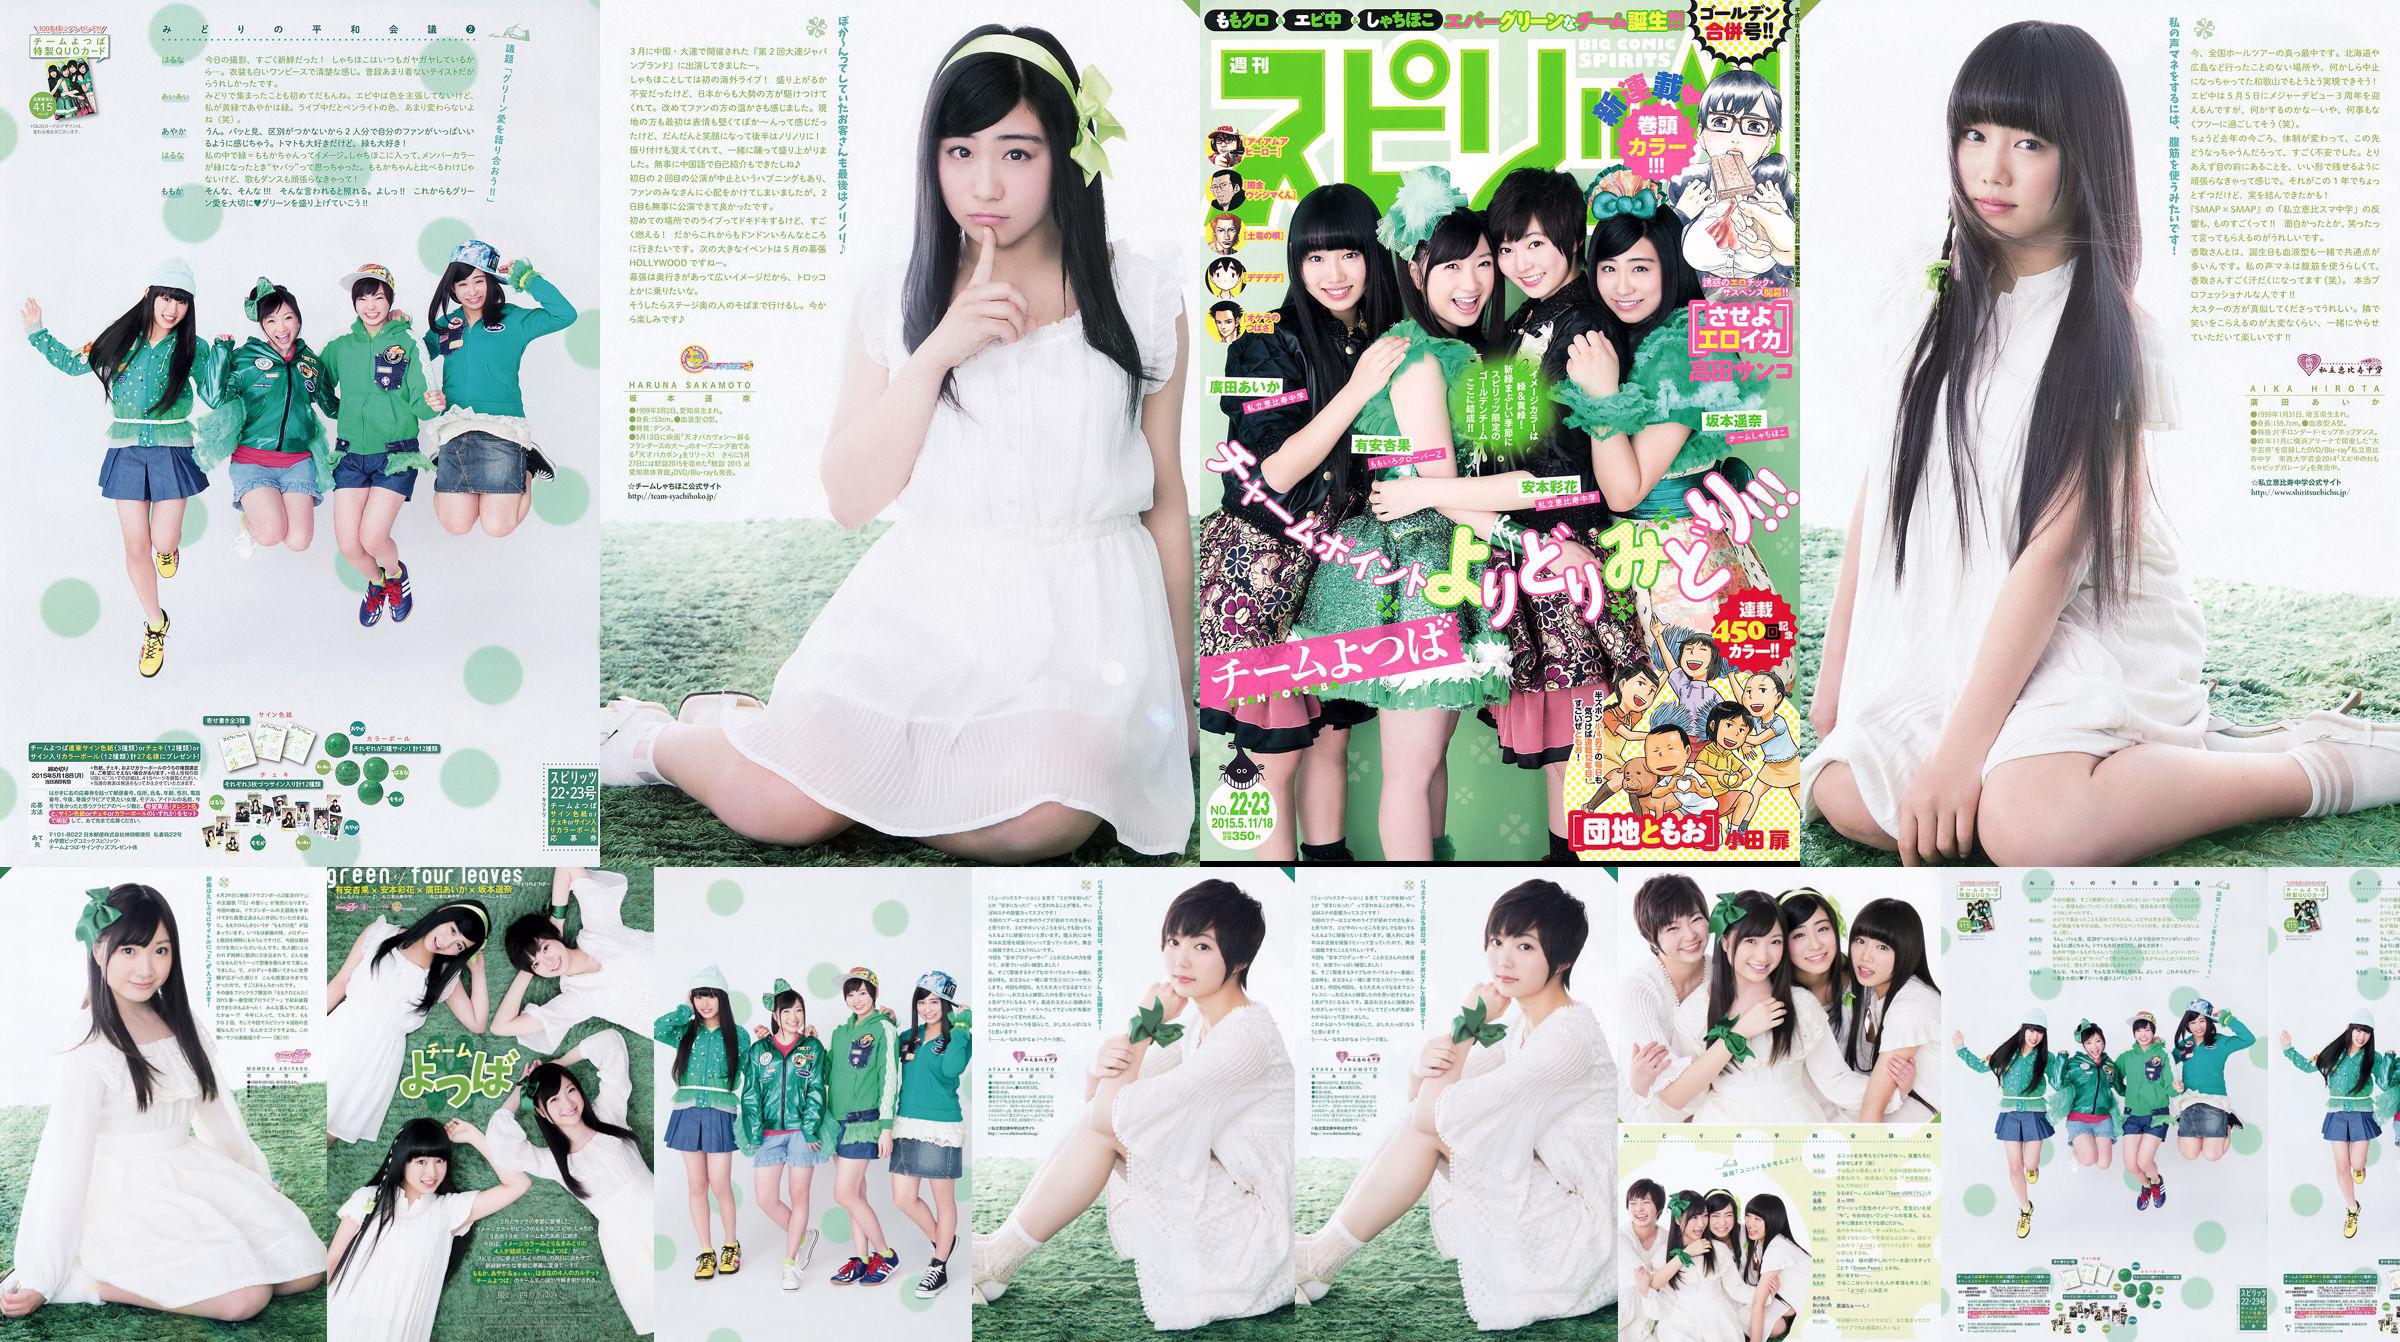 [Weekly Big Comic Spirits] Ayaka Ayana Ayana Sakamoto Haruna Hirota 2015 No.22-23 Photo Magazine No.8e6bea Pagina 1